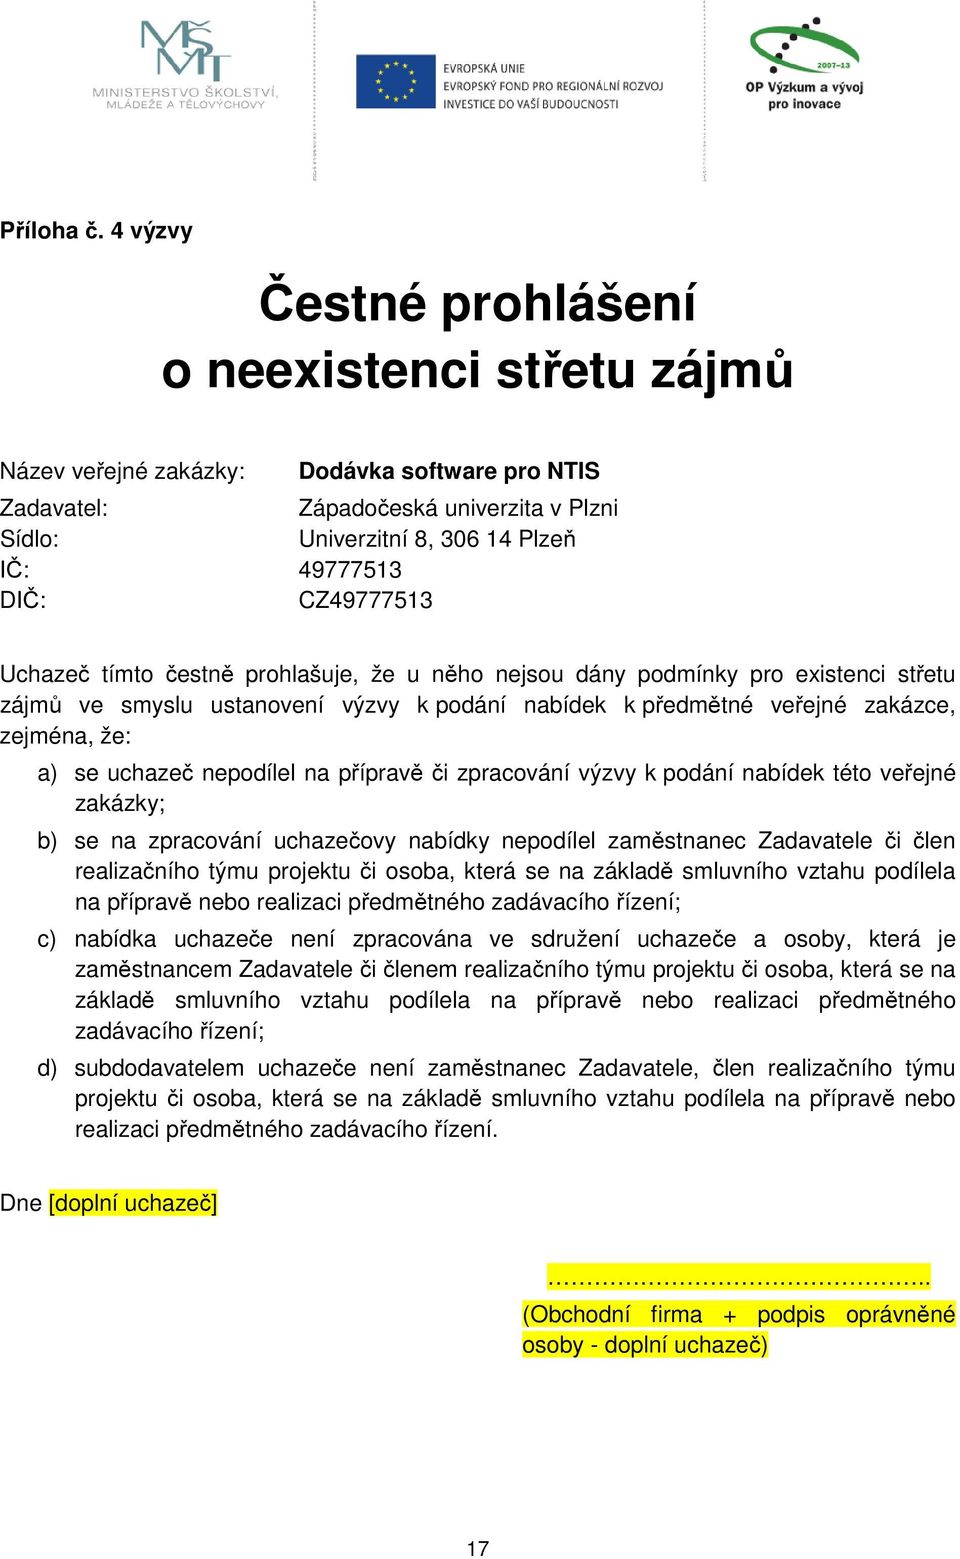 CZ49777513 Uchazeč tímto čestně prohlašuje, že u něho nejsou dány podmínky pro existenci střetu zájmů ve smyslu ustanovení výzvy k podání nabídek k předmětné veřejné zakázce, zejména, že: a) se